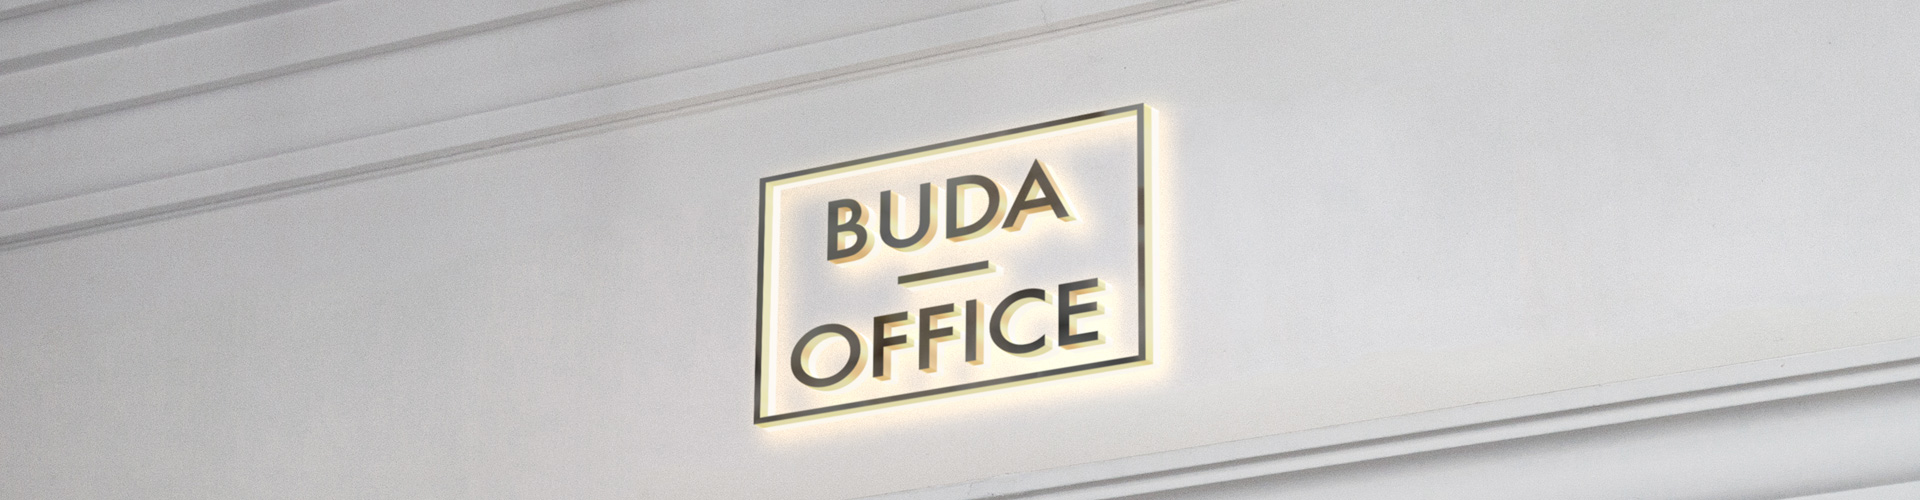 Buda Office Ajanlatok